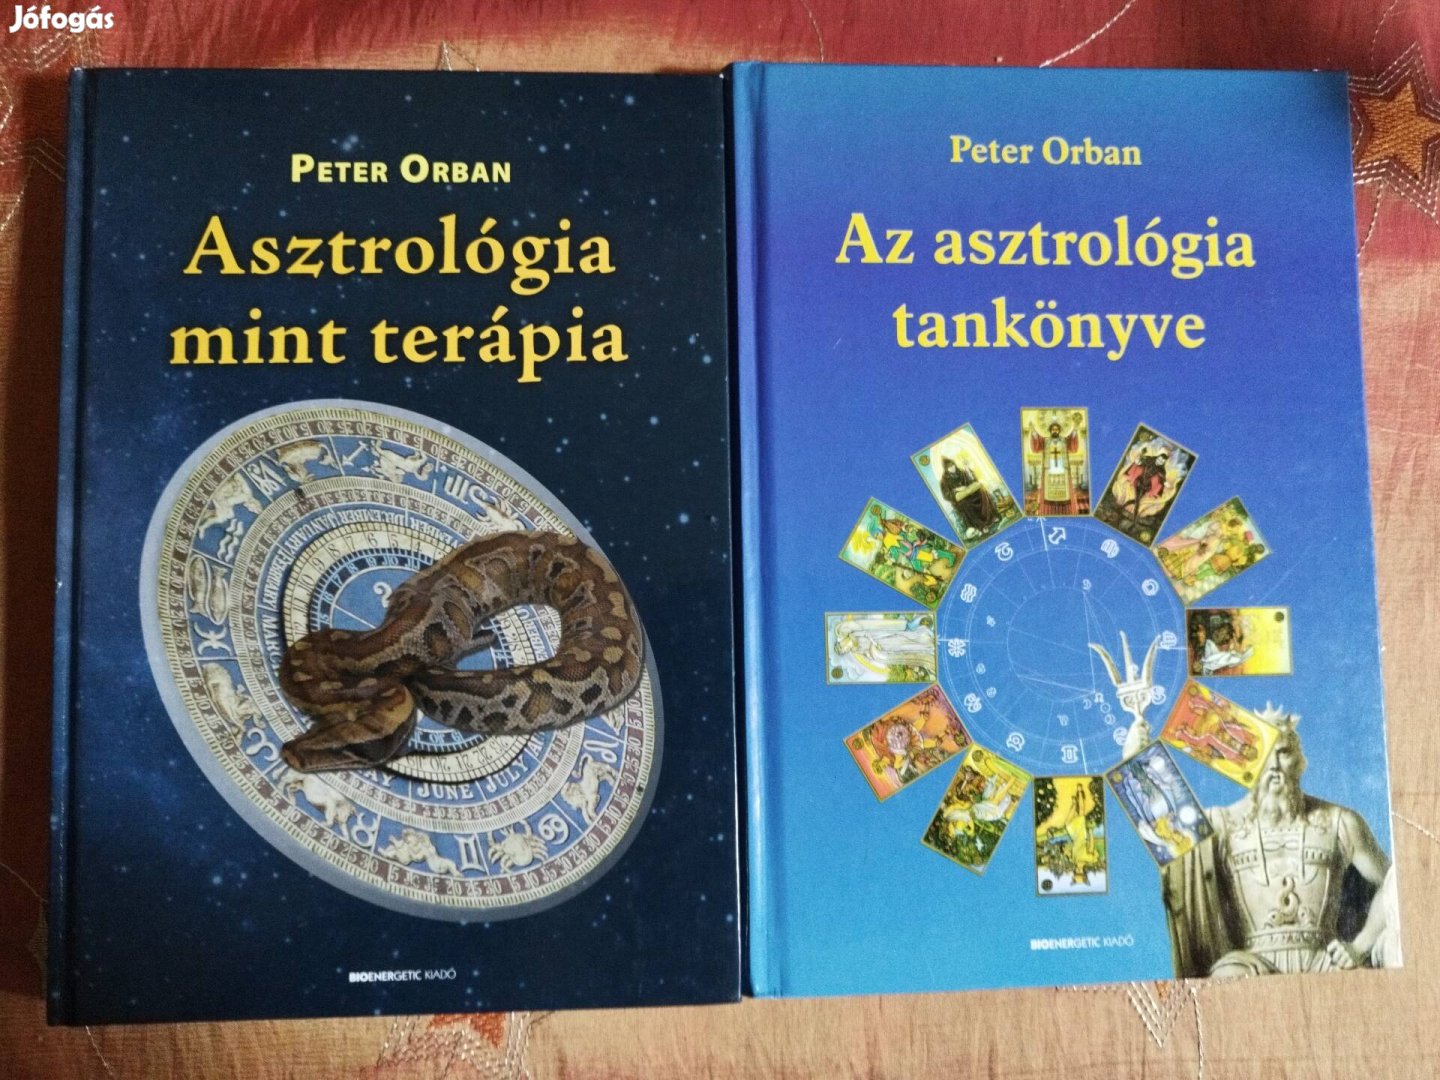 Péter Orbán asztrológia könyvek